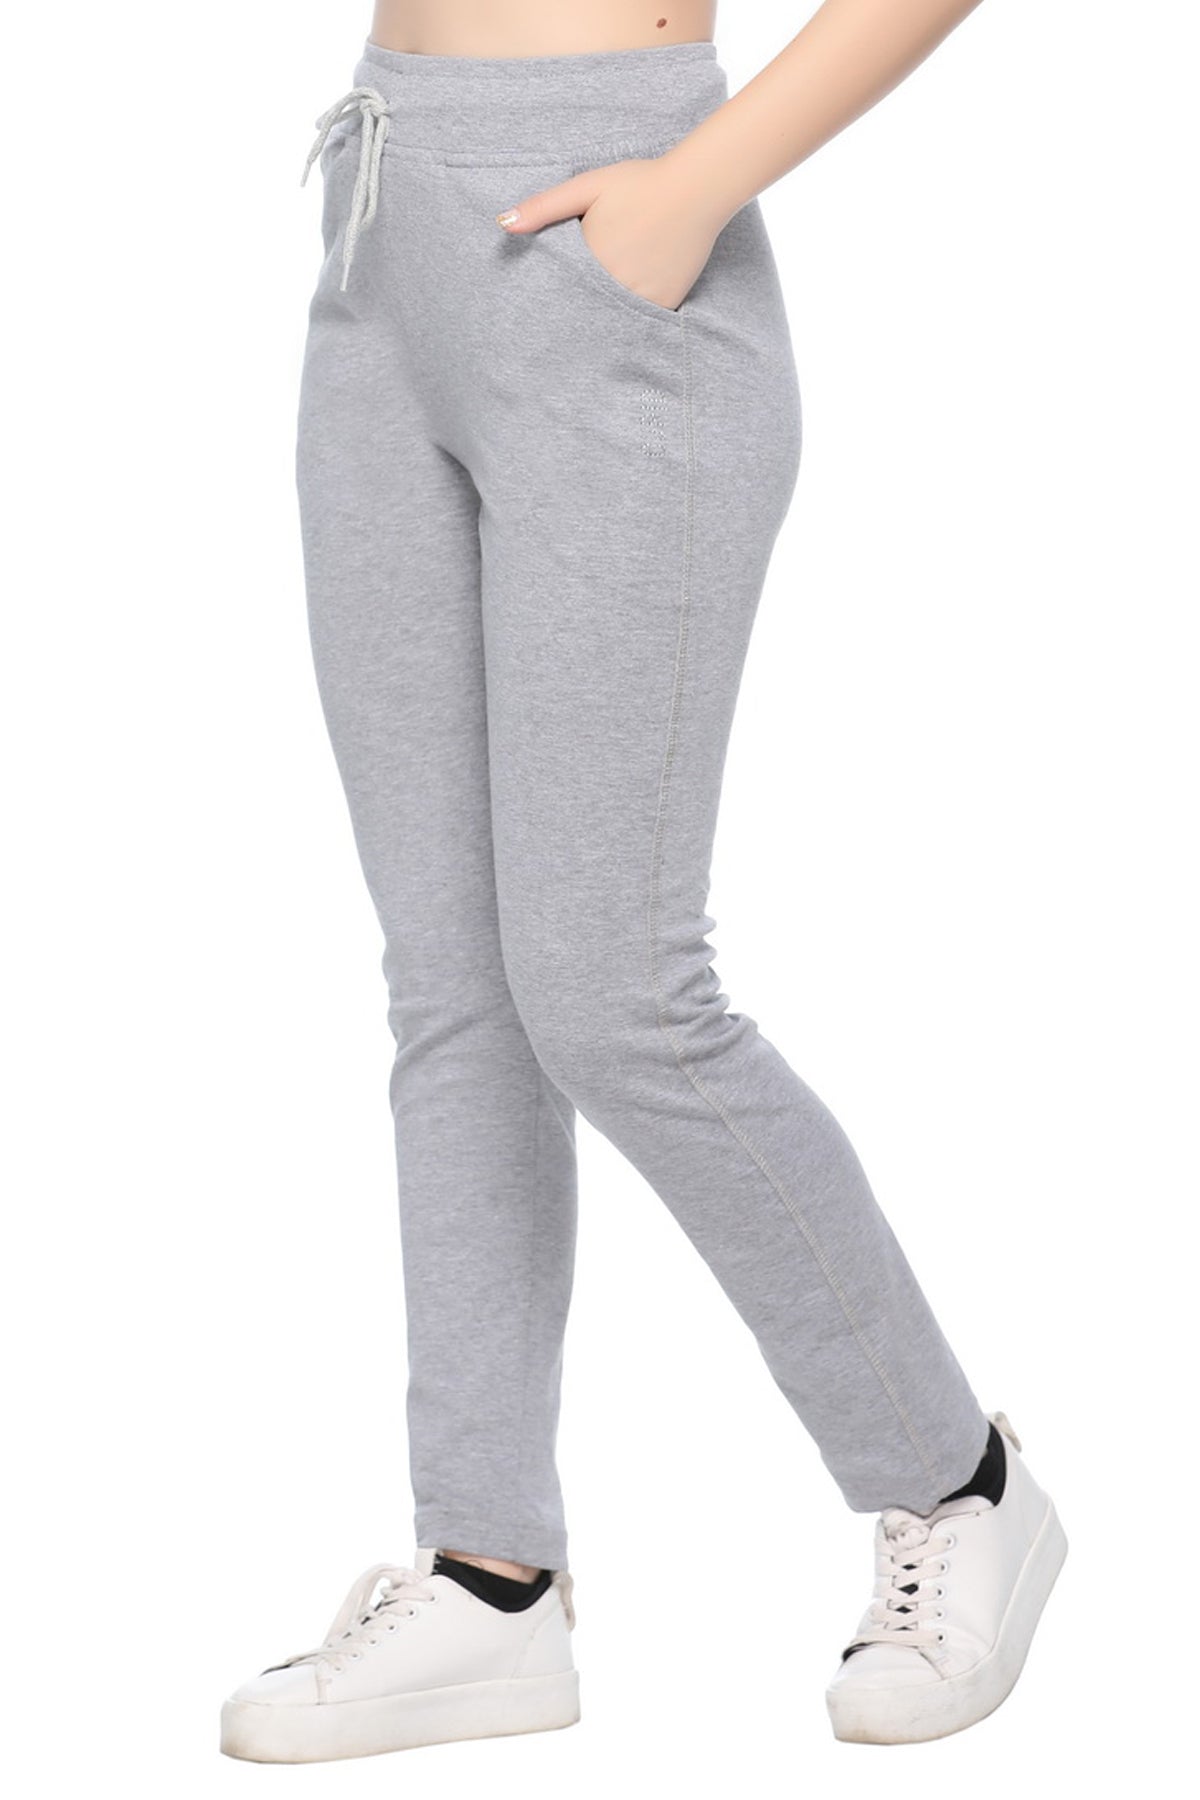 Buy SPAN Regular Fit Cotton Lycra Women's Festive Wear Pants | Shoppers Stop